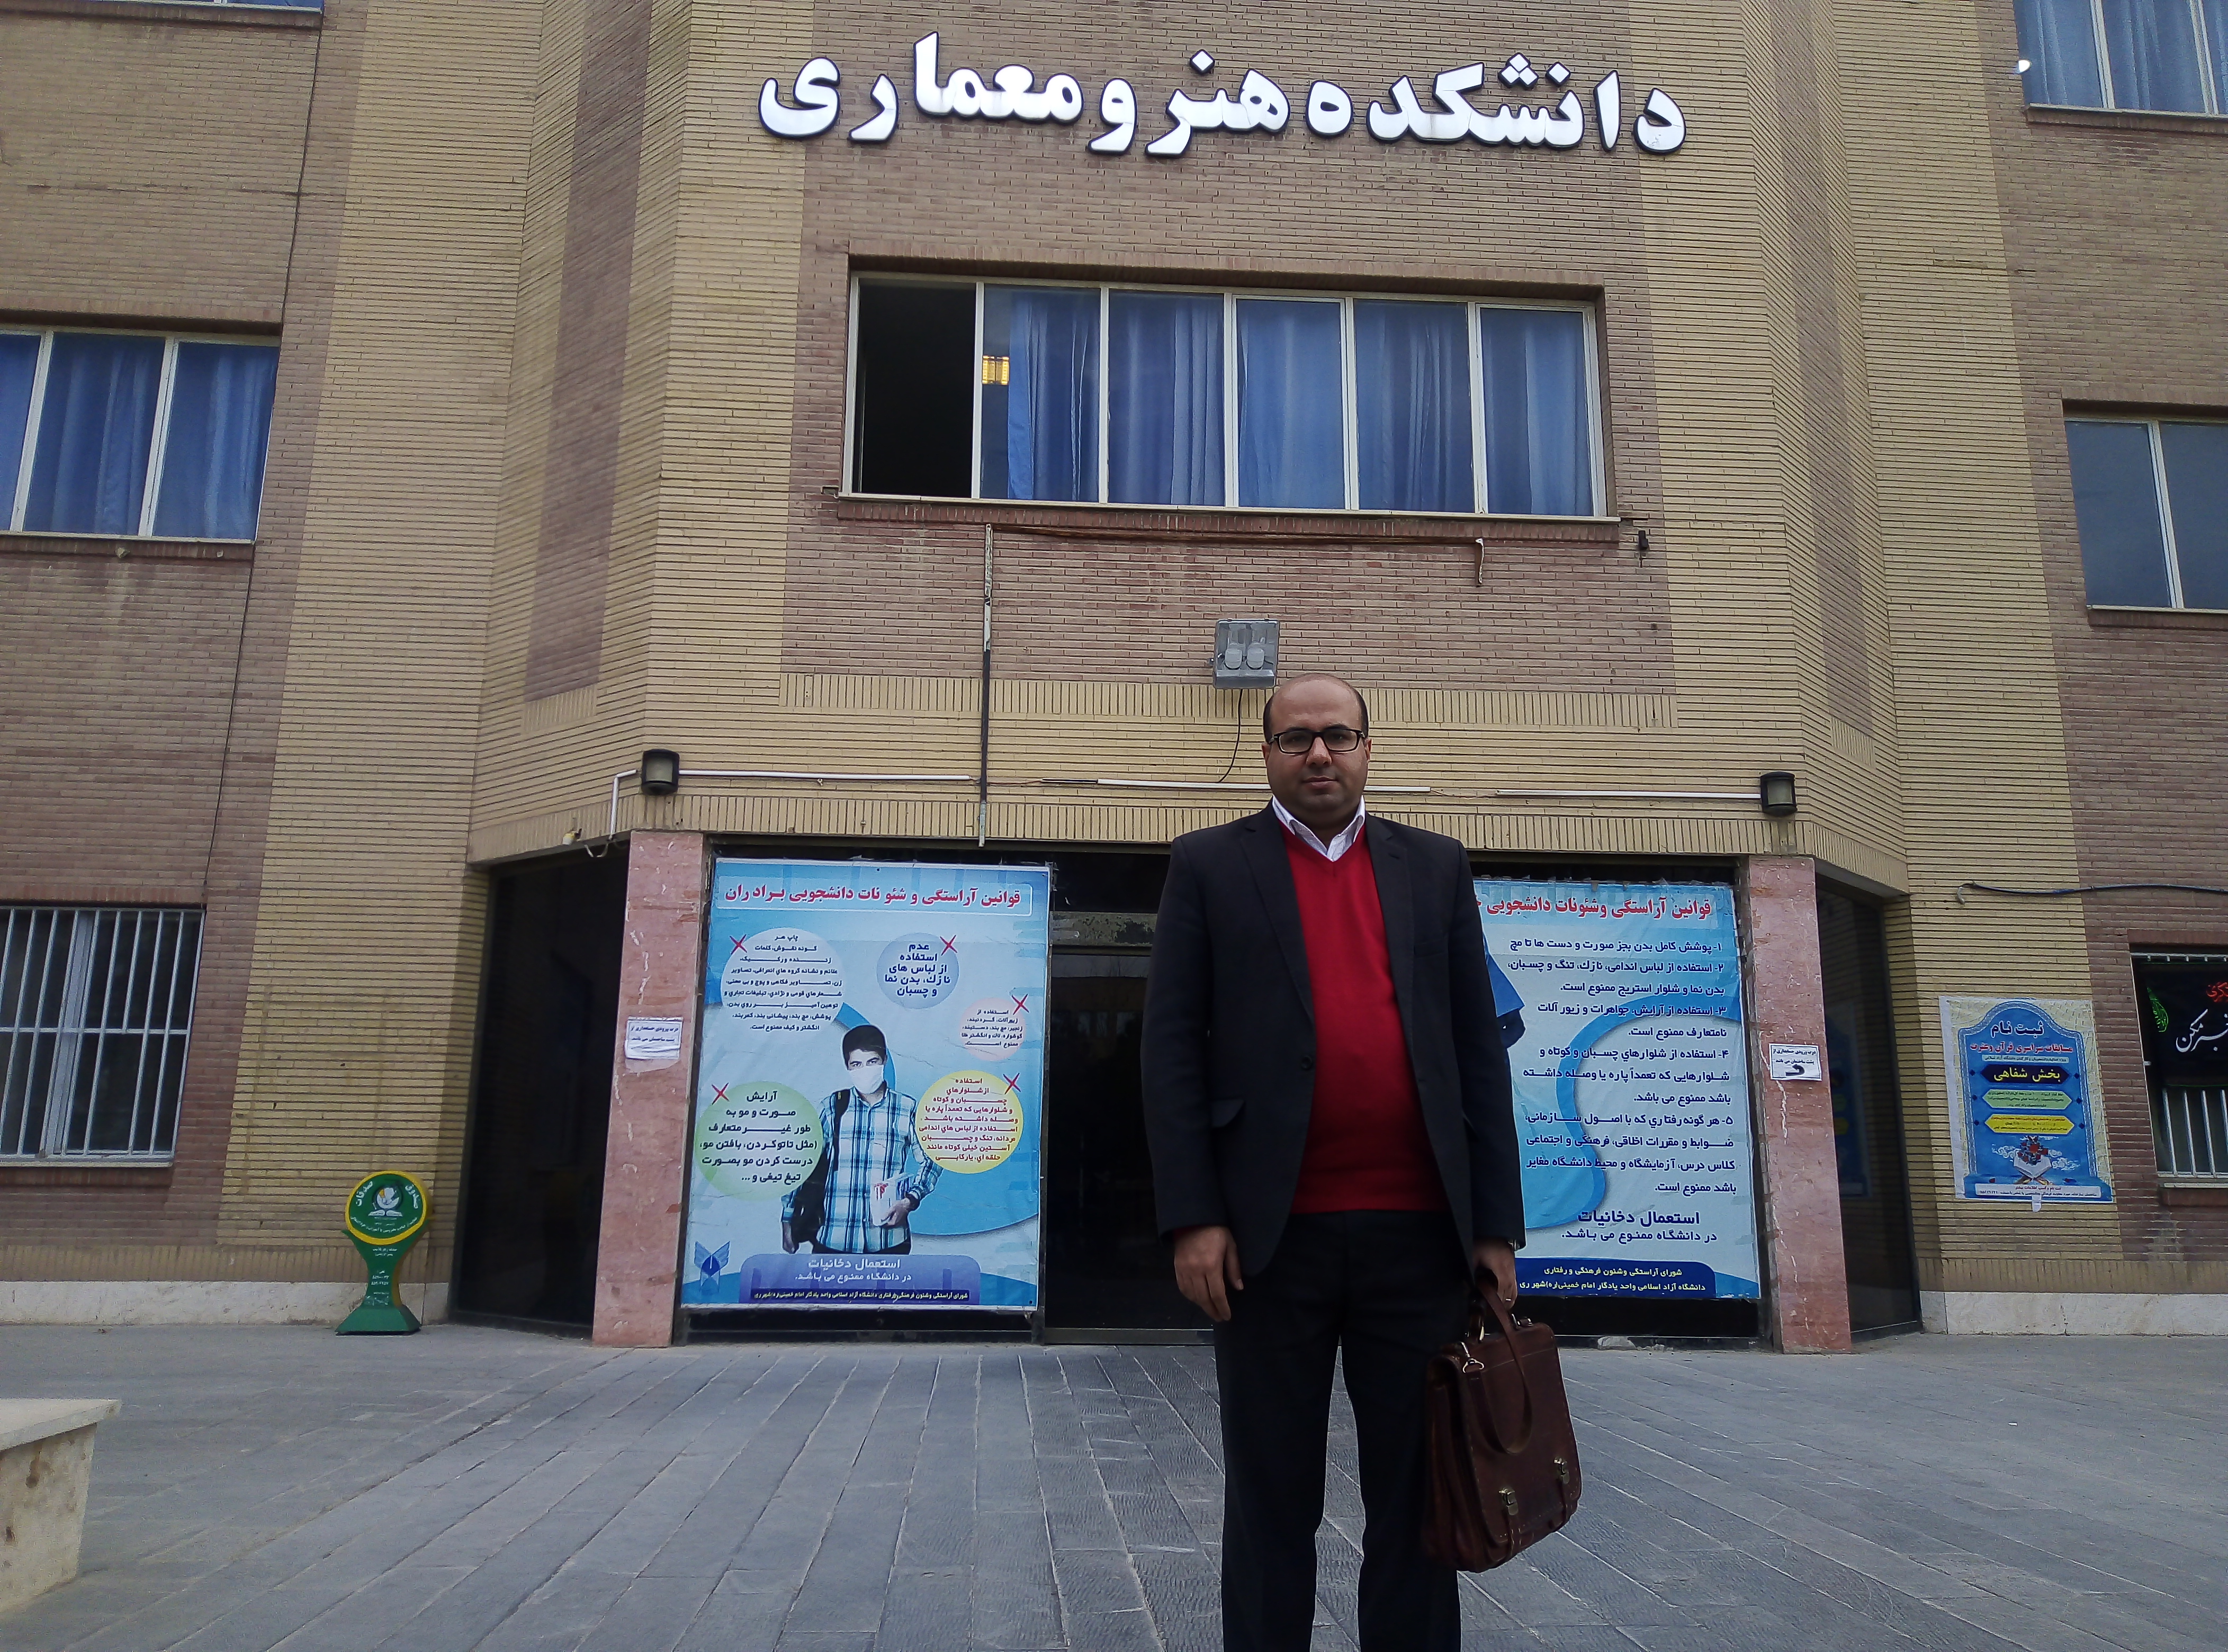 دکتر علی اکبری، استادیار معماری دانشگاه آزاد شهرری (داور جشنواره)